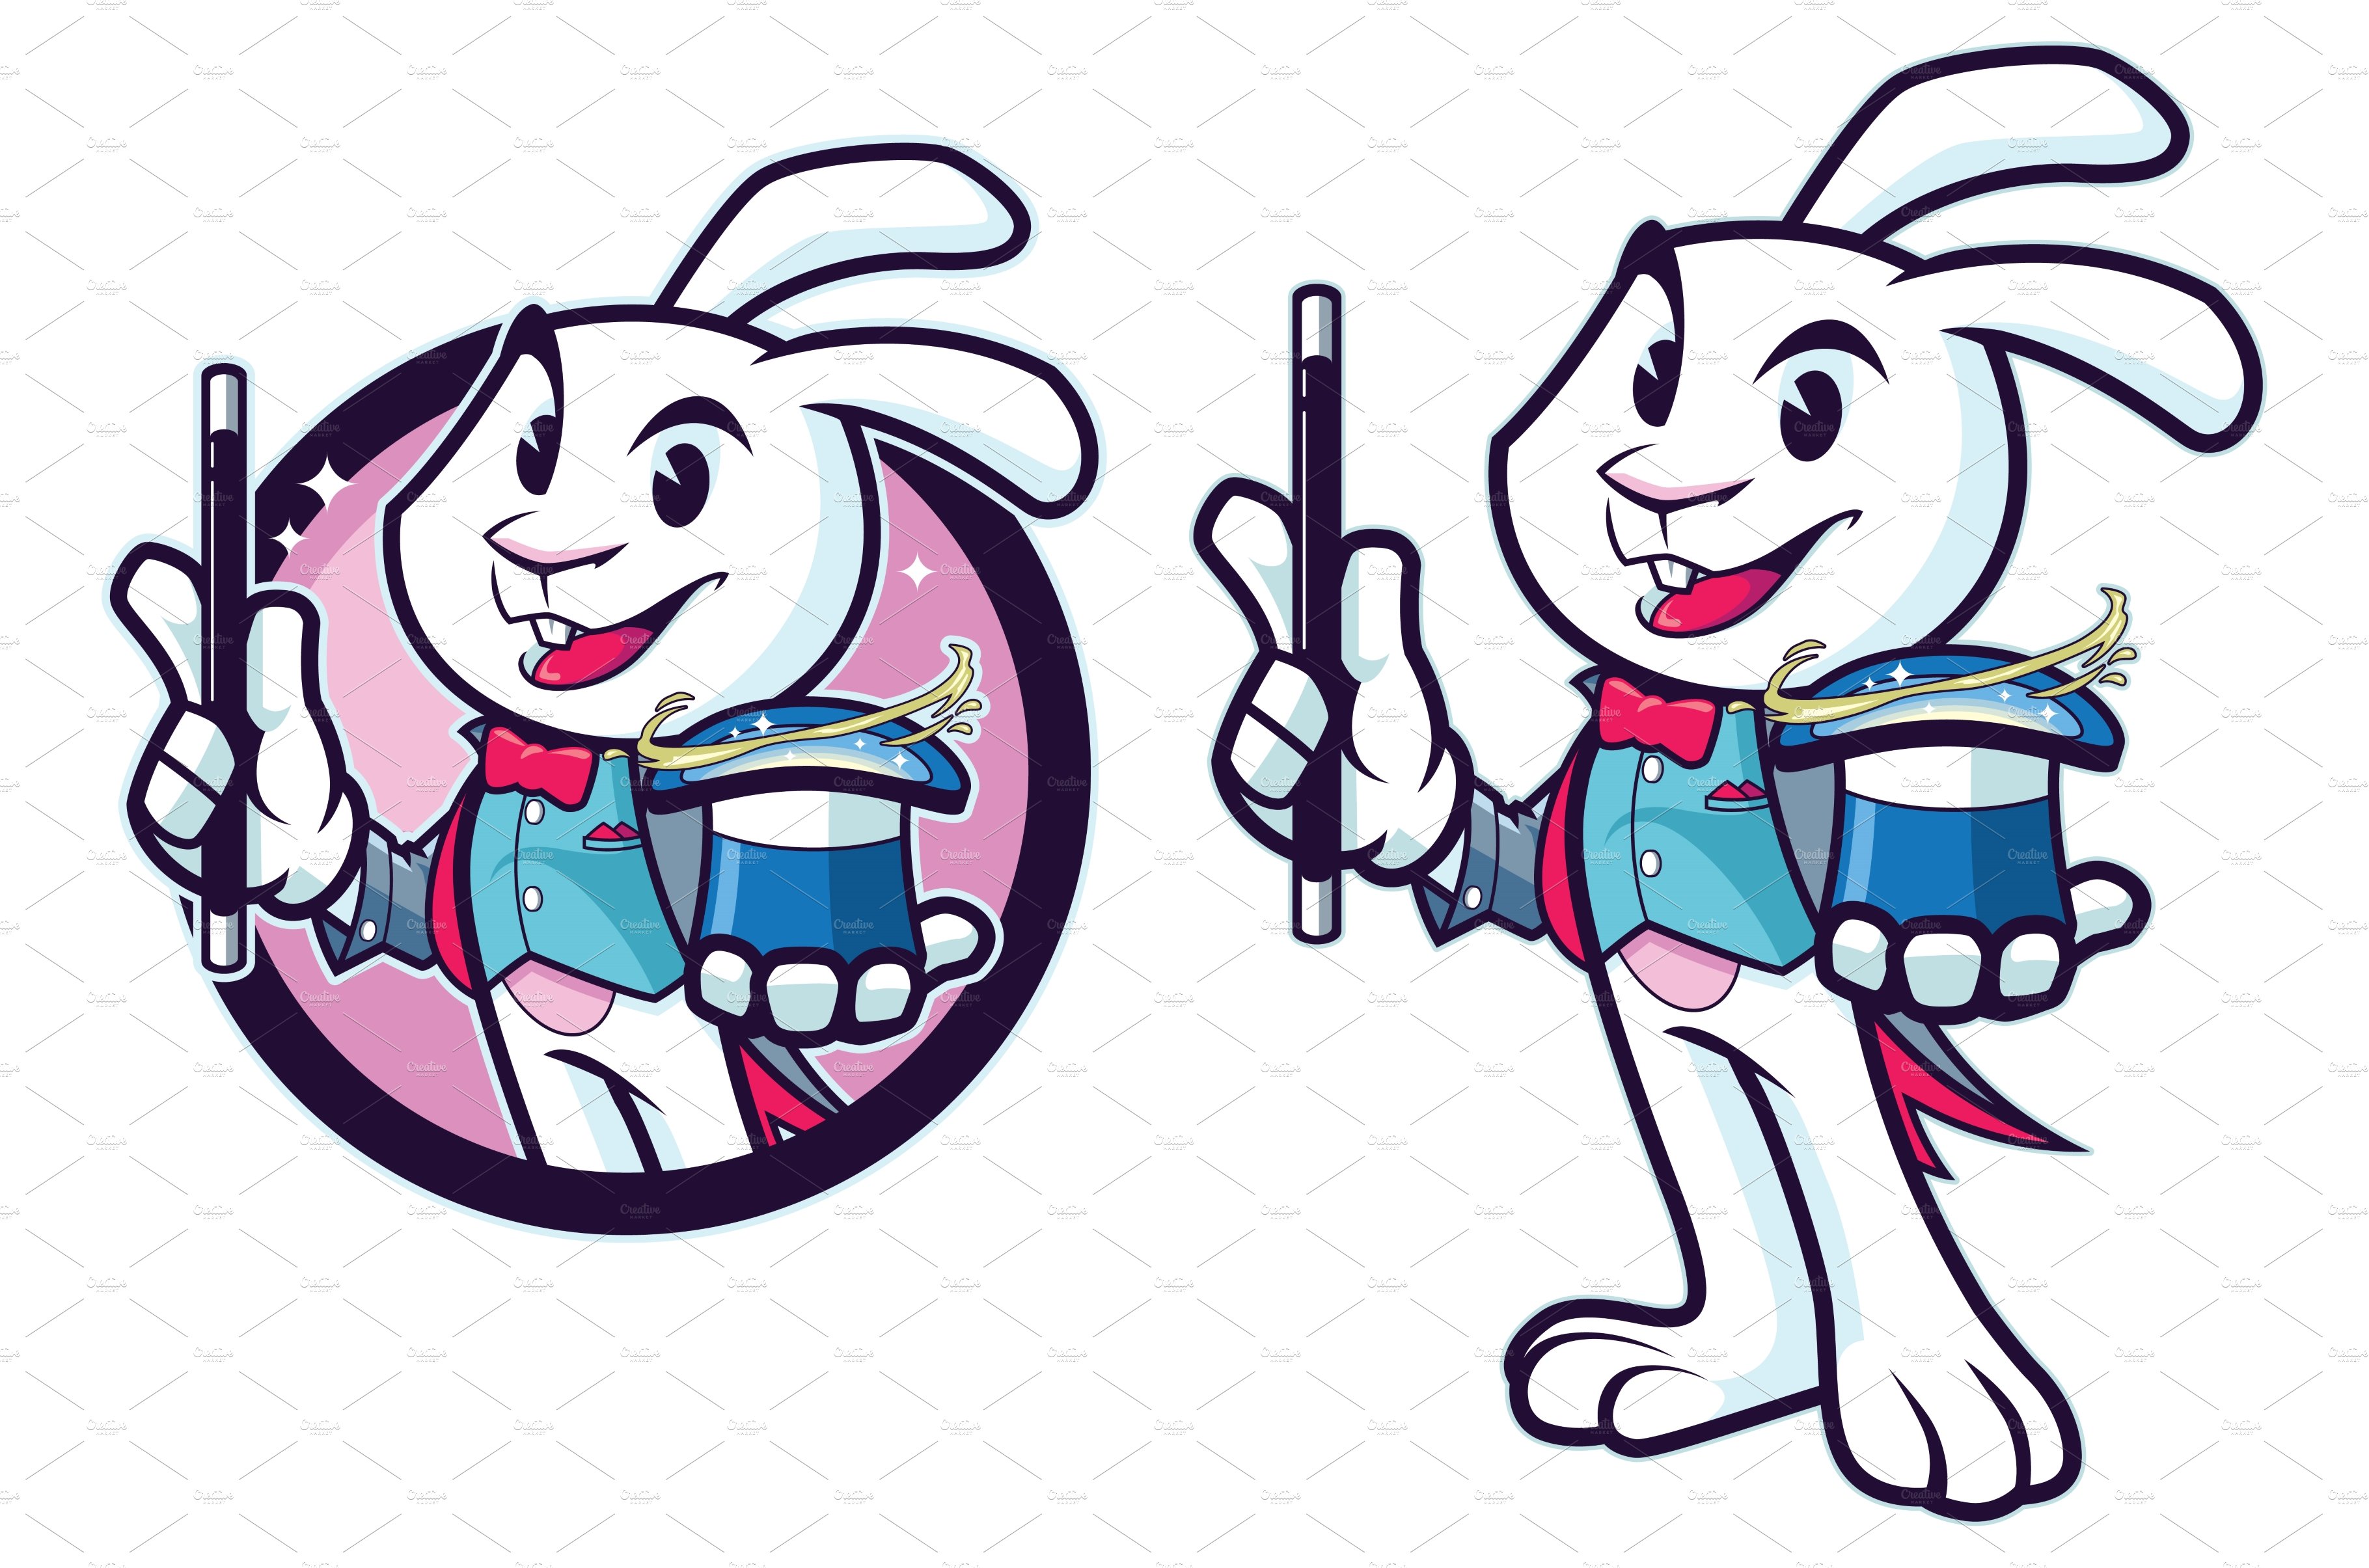 Rabbit Magician Mascot cover image.